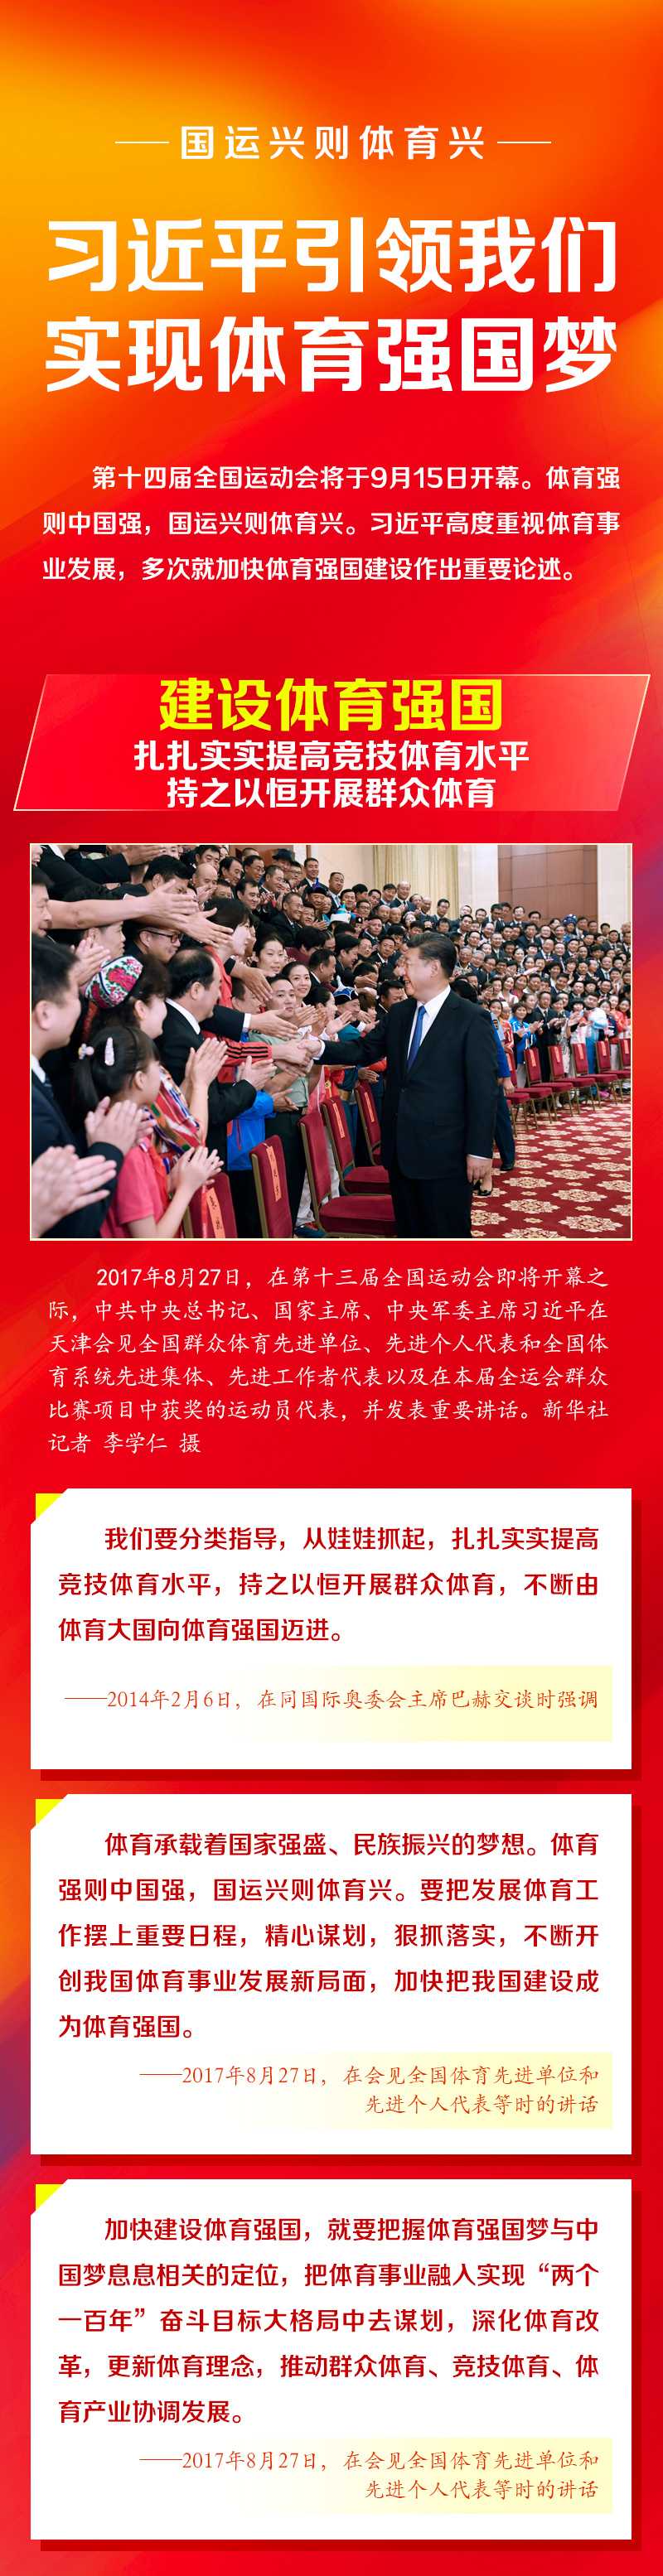 国运兴则体育兴 人民网-中国共产党新闻网1.jpg